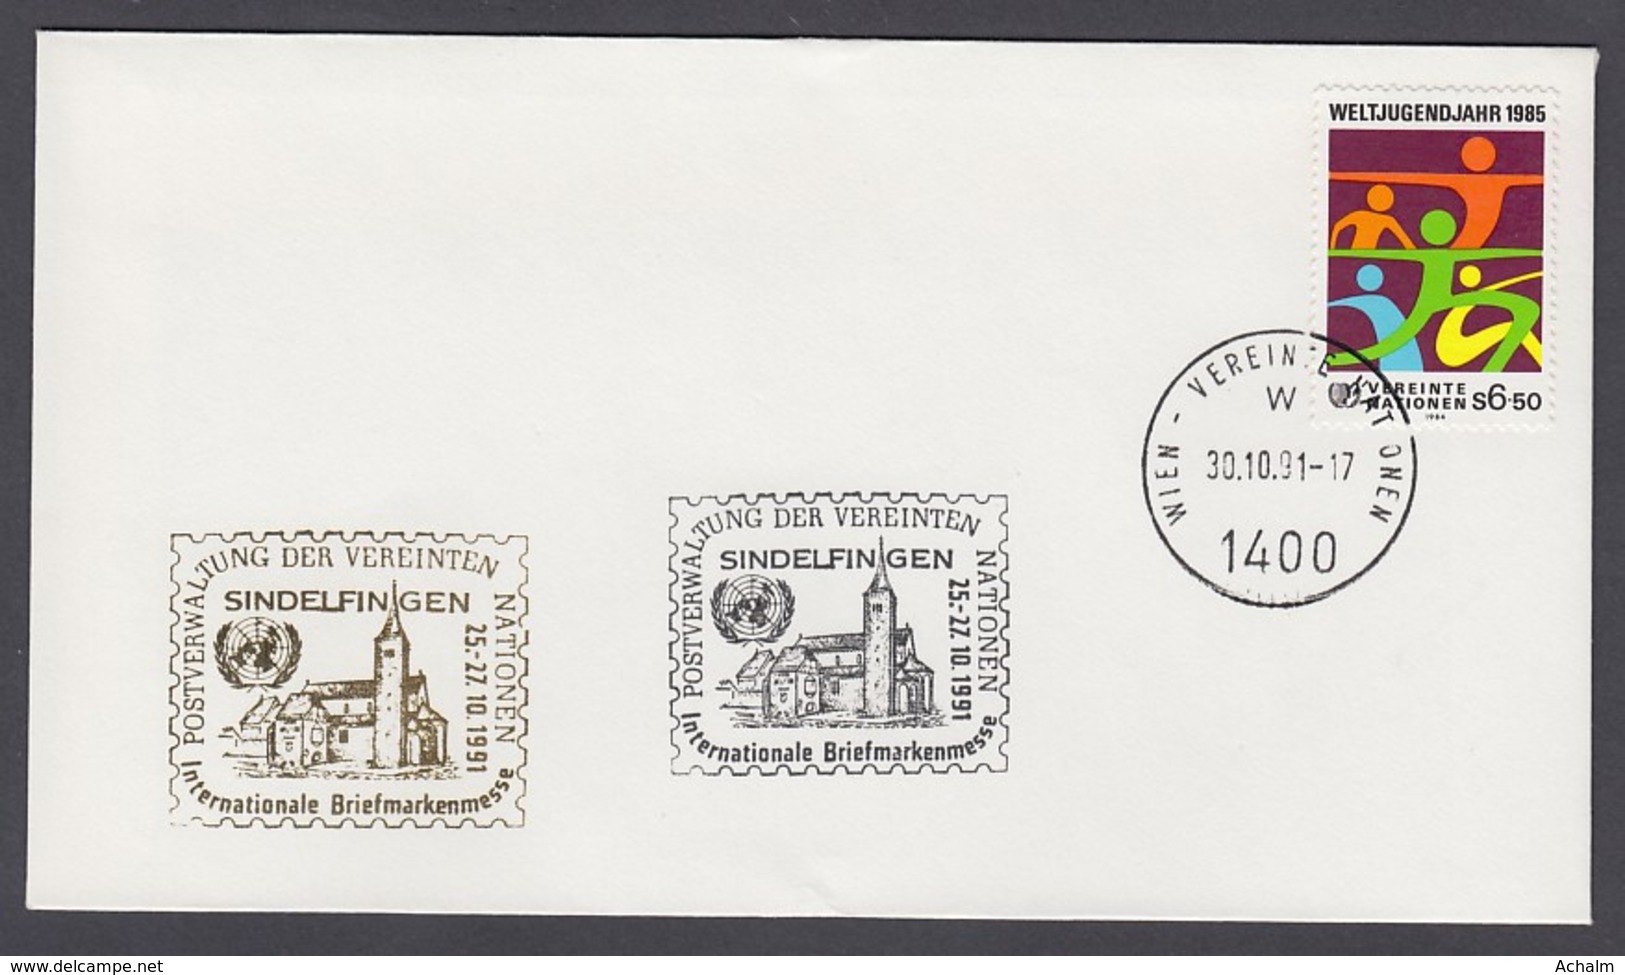 UNO Wien-UN Vienna - Beleg 1991 - MiNr. 46 - Gold-Sonderstempel - Int. Briefmarkenmesse, Sindelfingen - UNO